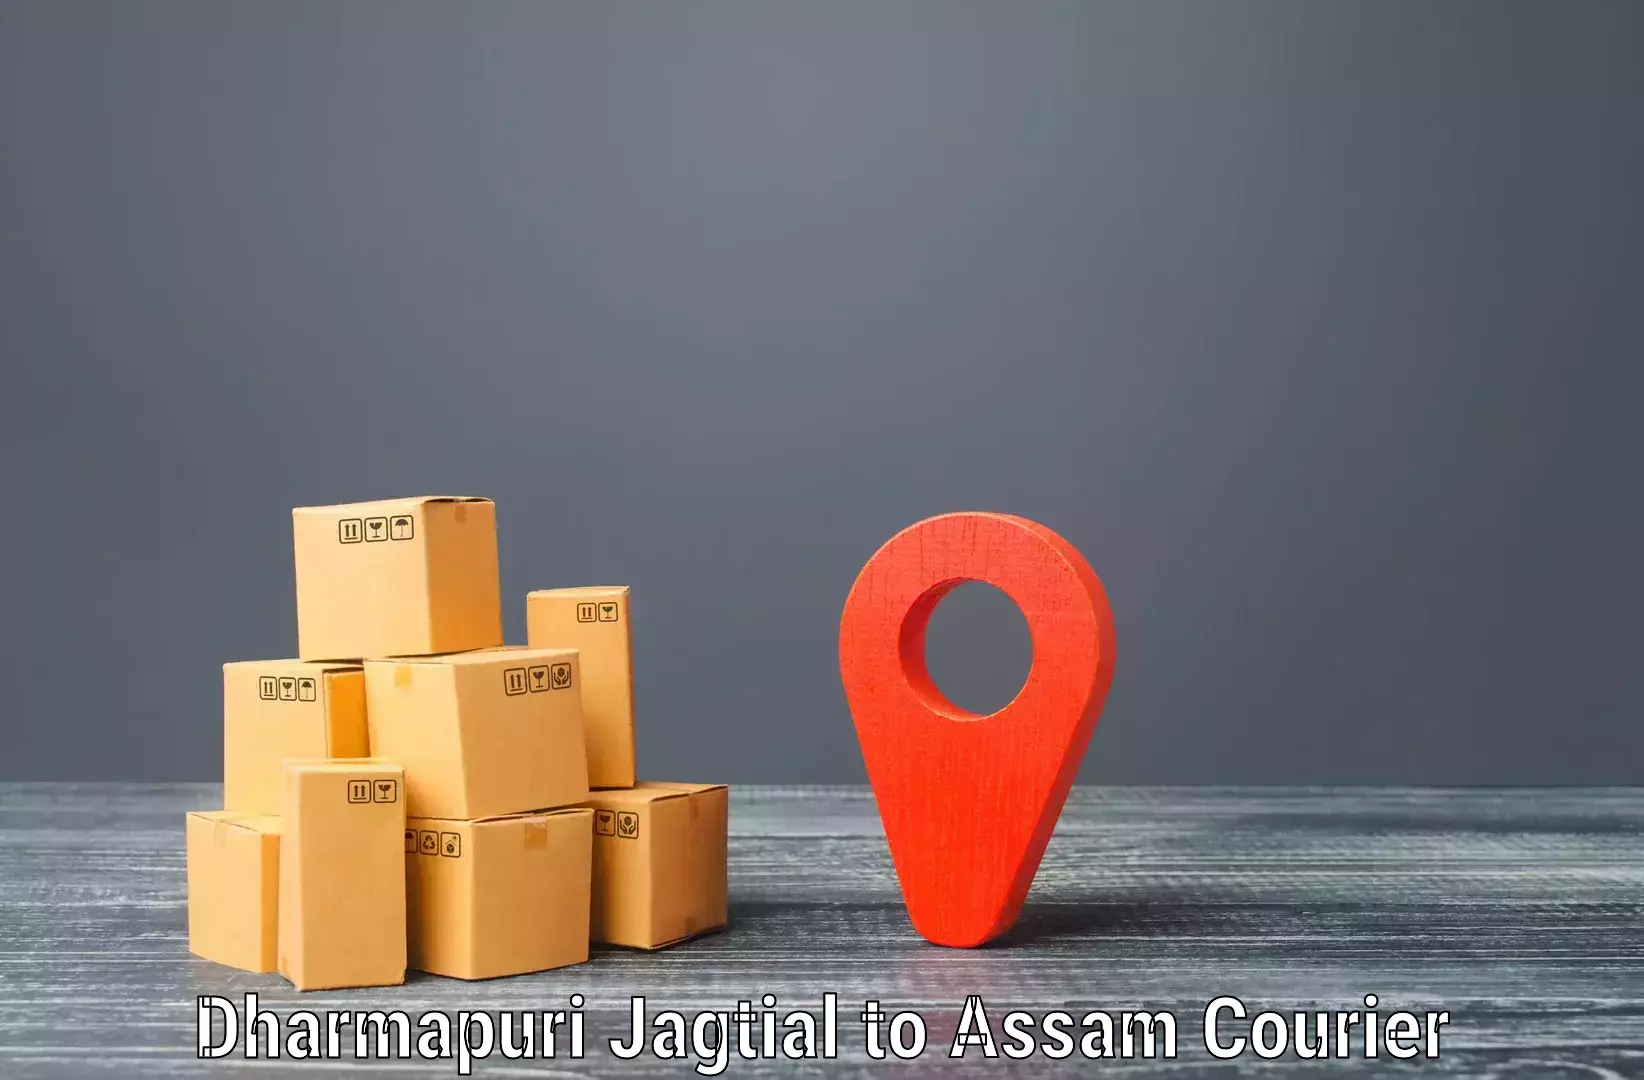 Customizable shipping options Dharmapuri Jagtial to Karbi Anglong